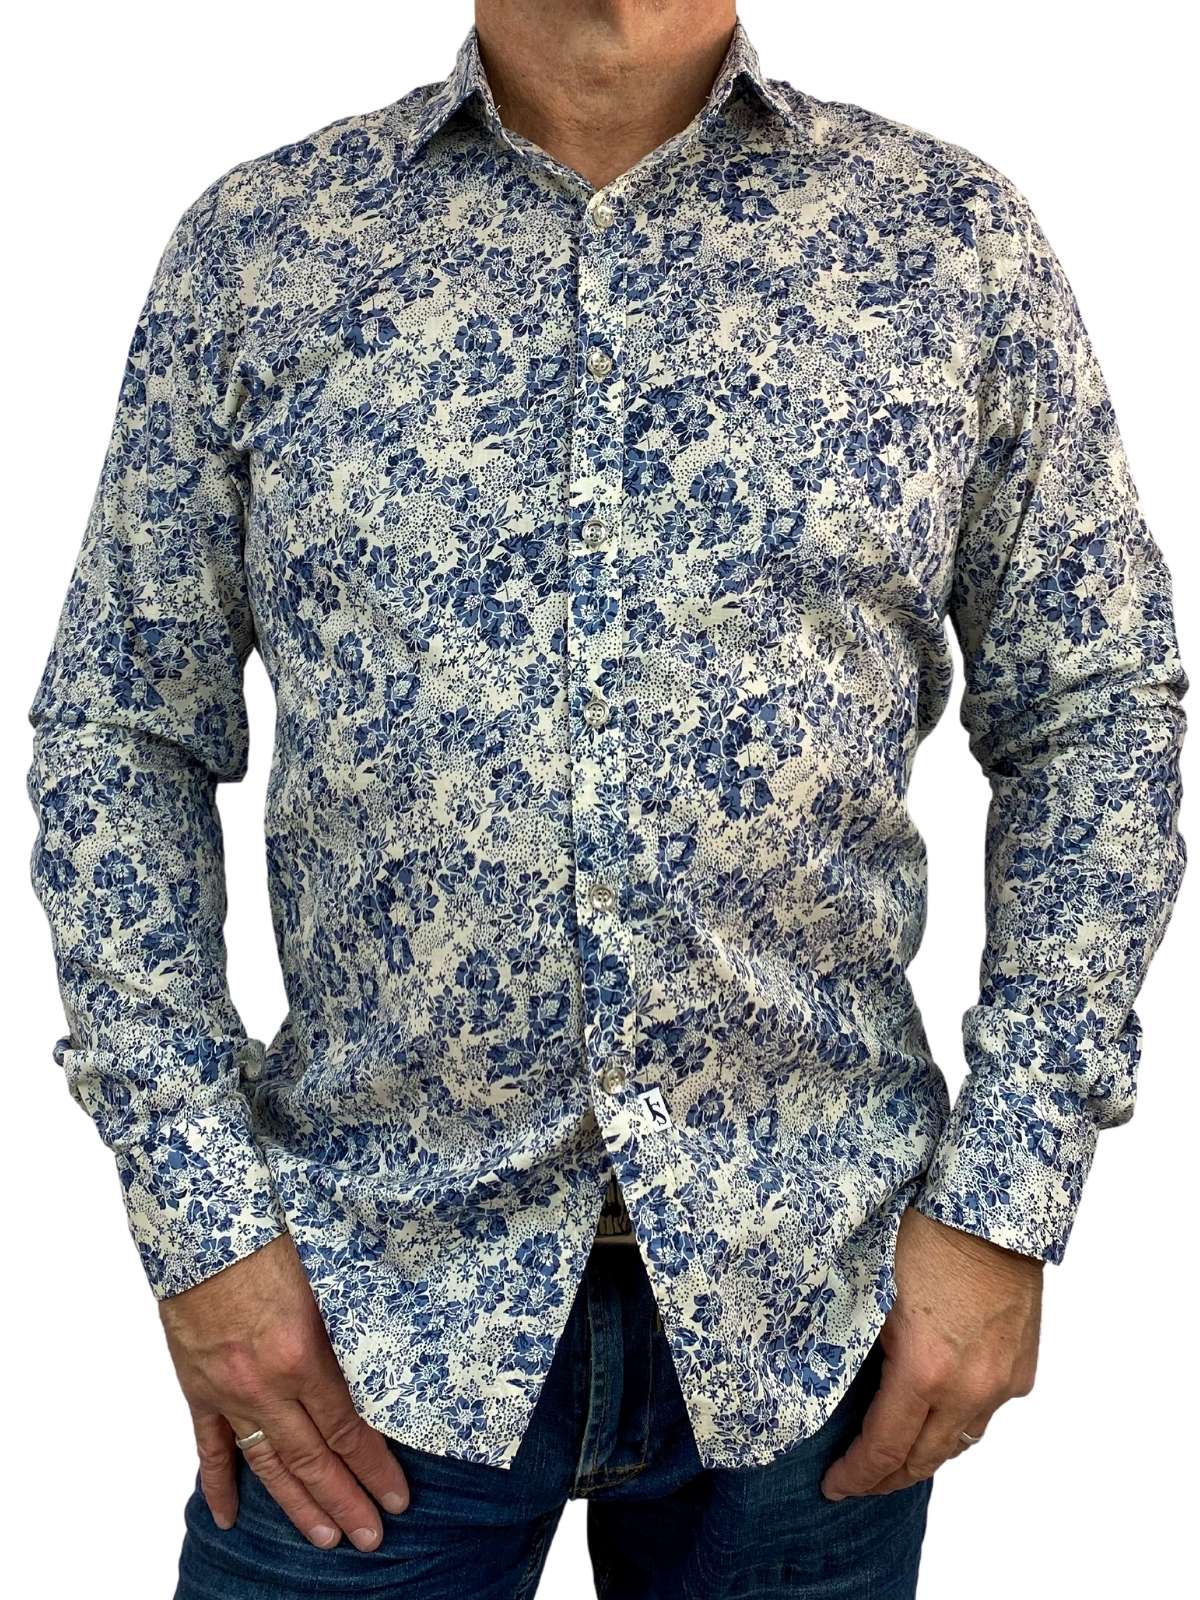 Vintage Floral Cotton L/S Big Mens Shirt - Navy/Cream